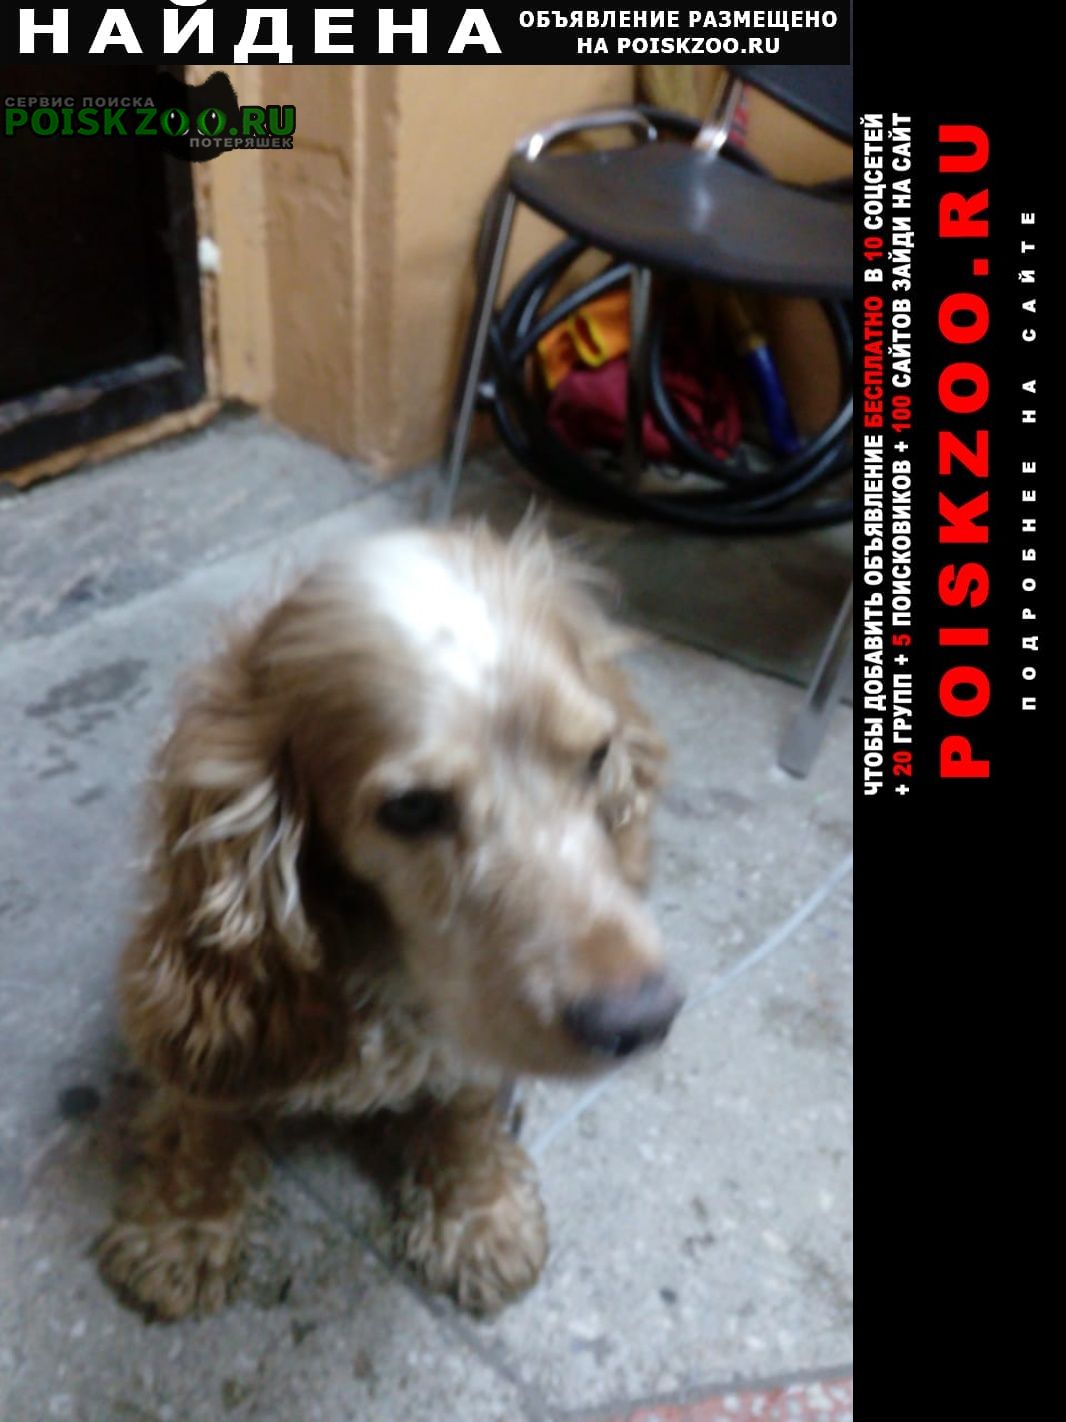 Найдена собака кобель кокер спаниель, мальчик Новосибирск